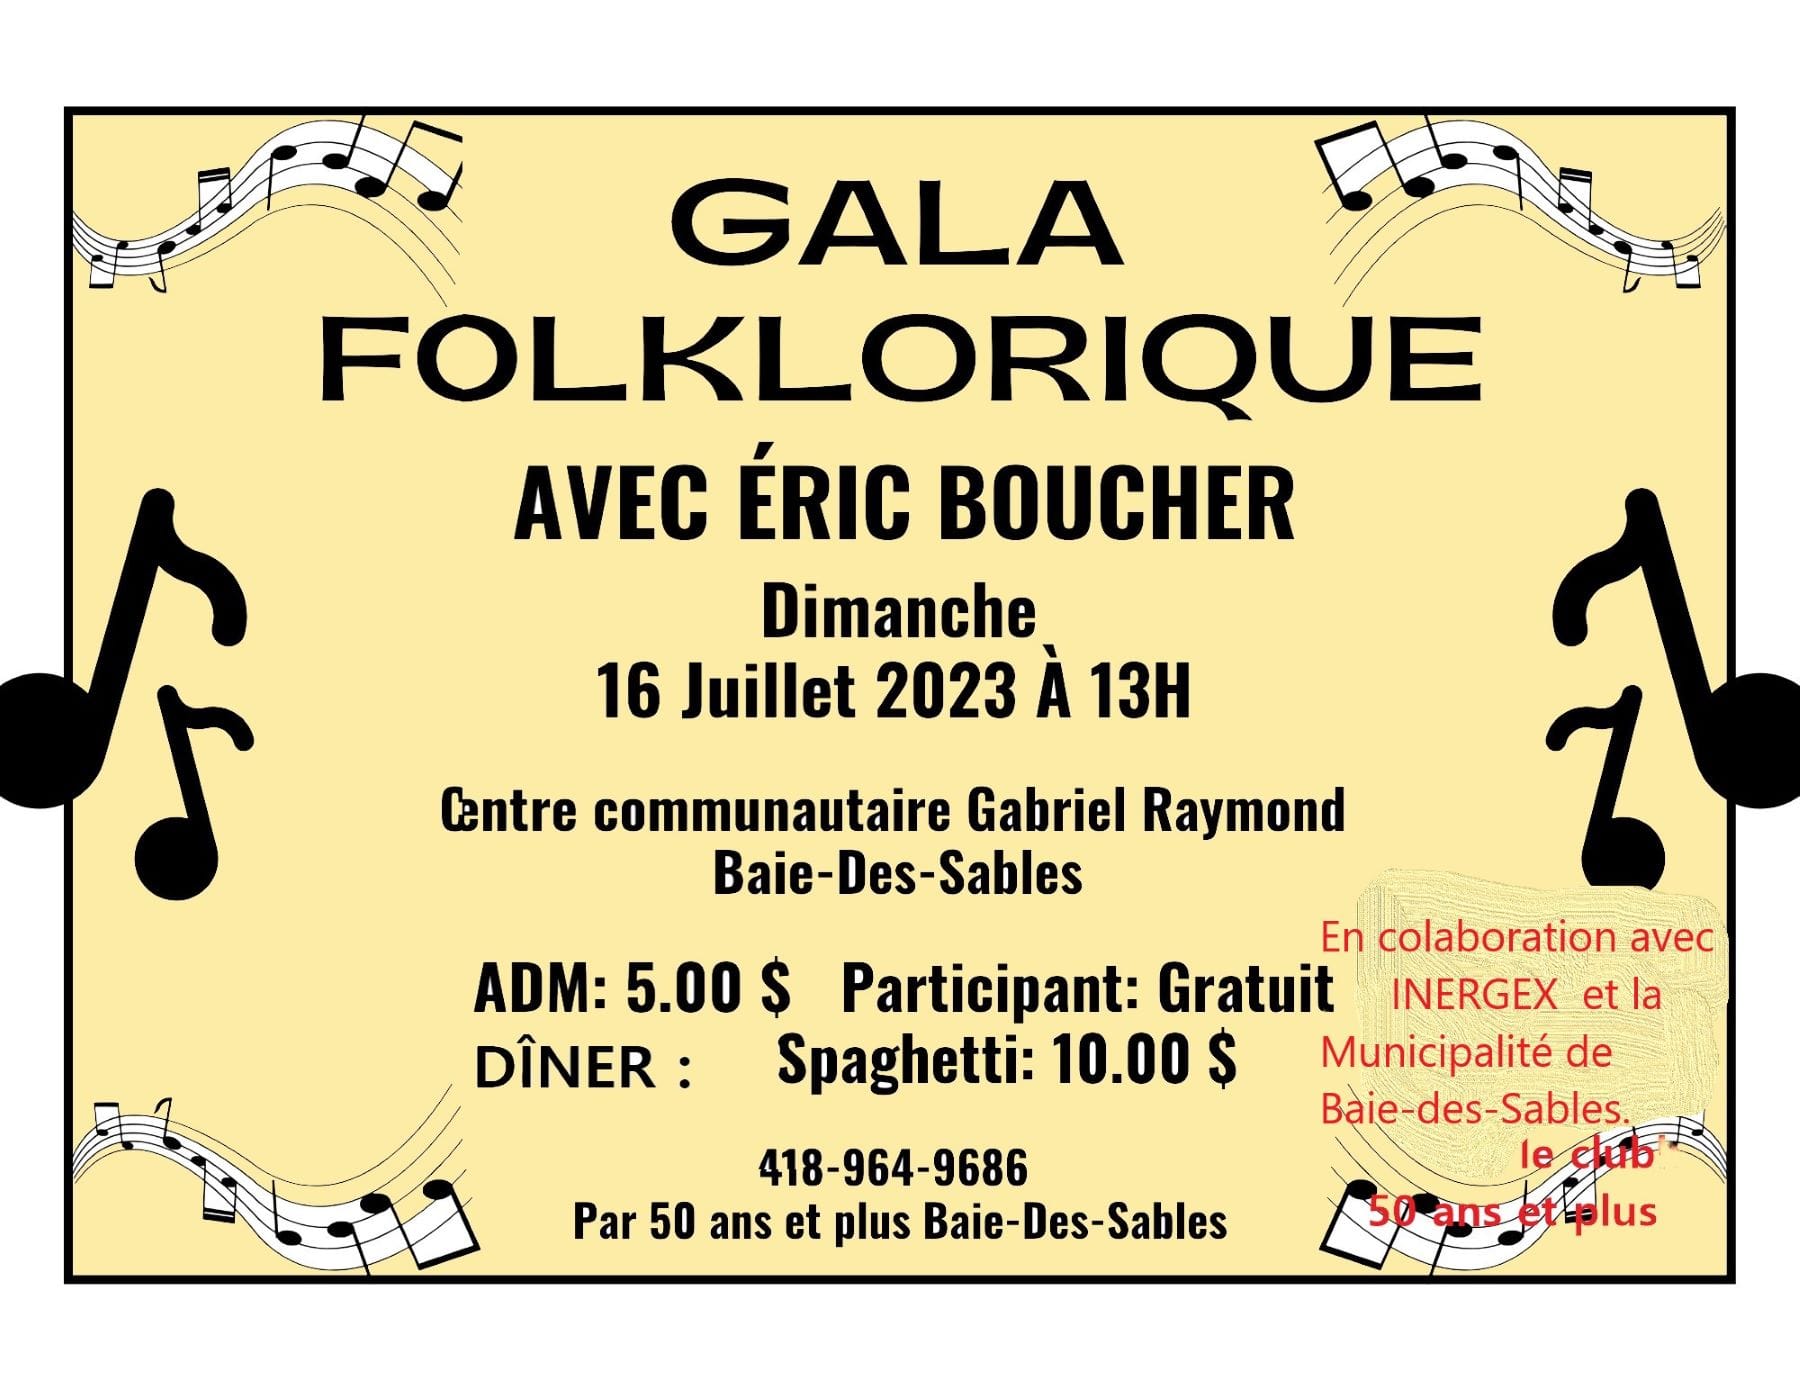 Gala folklorique de Baie-des-Sables